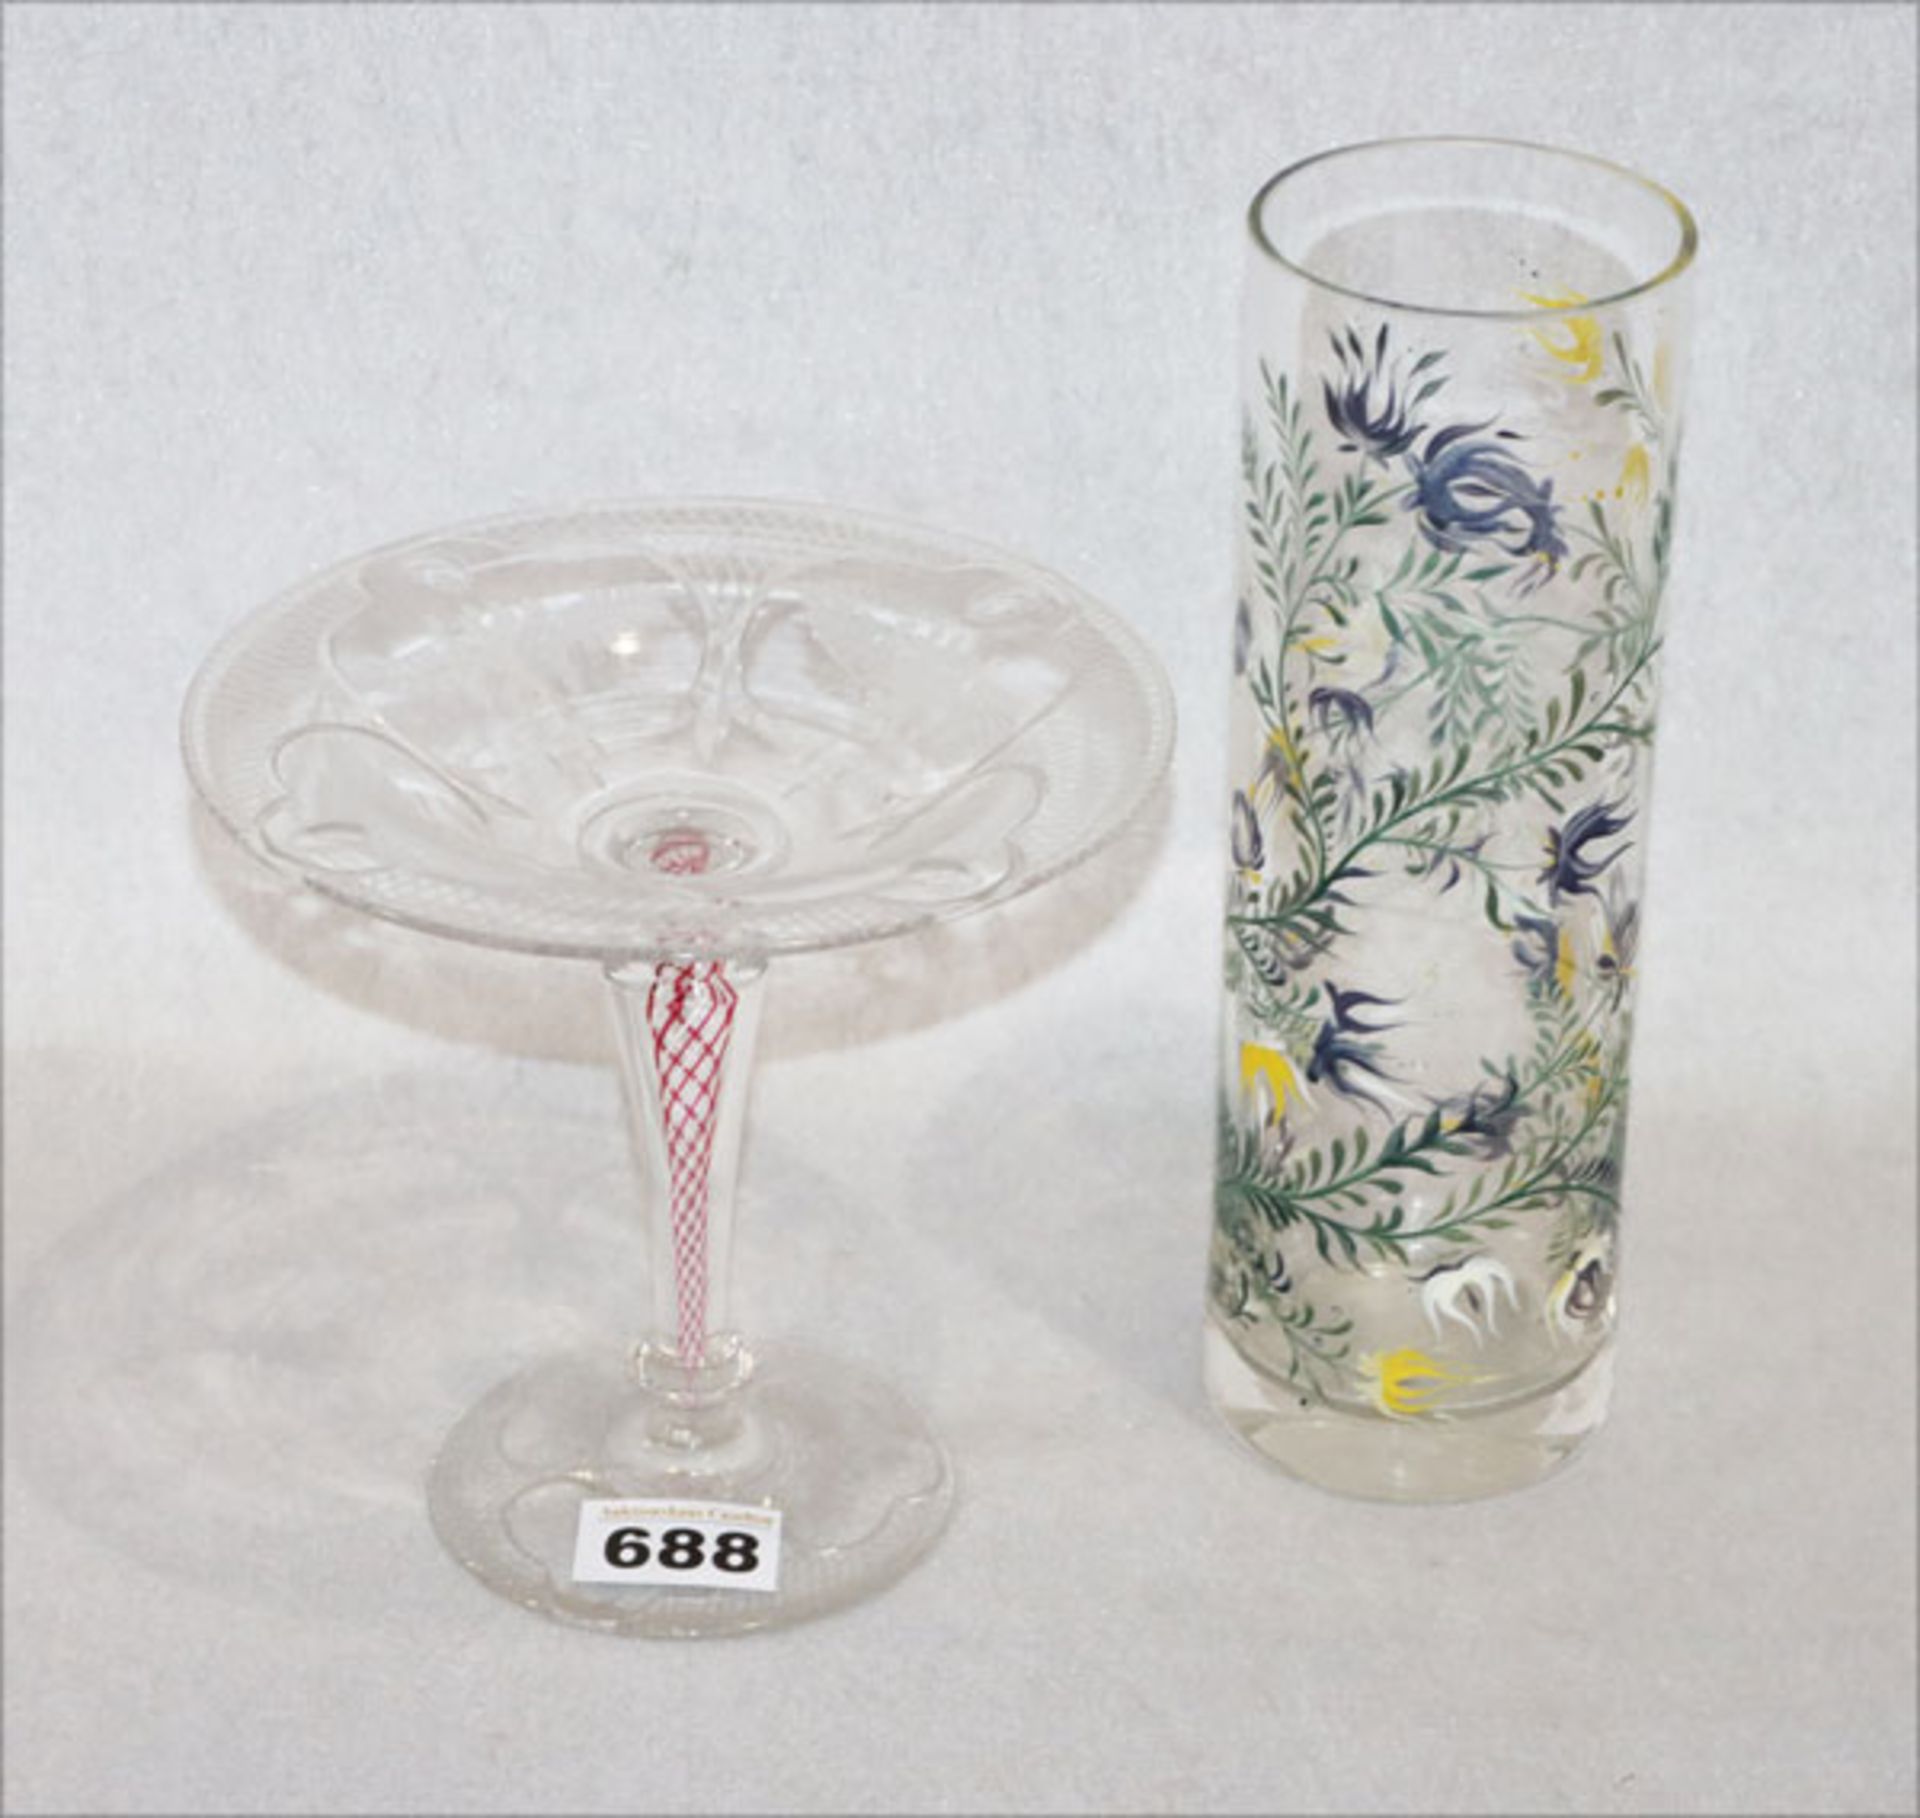 Glasvase mit gelb/blau/grünem Blumendekor, H 25 cm, und Glas Fußschale mit graviertem Dekor und